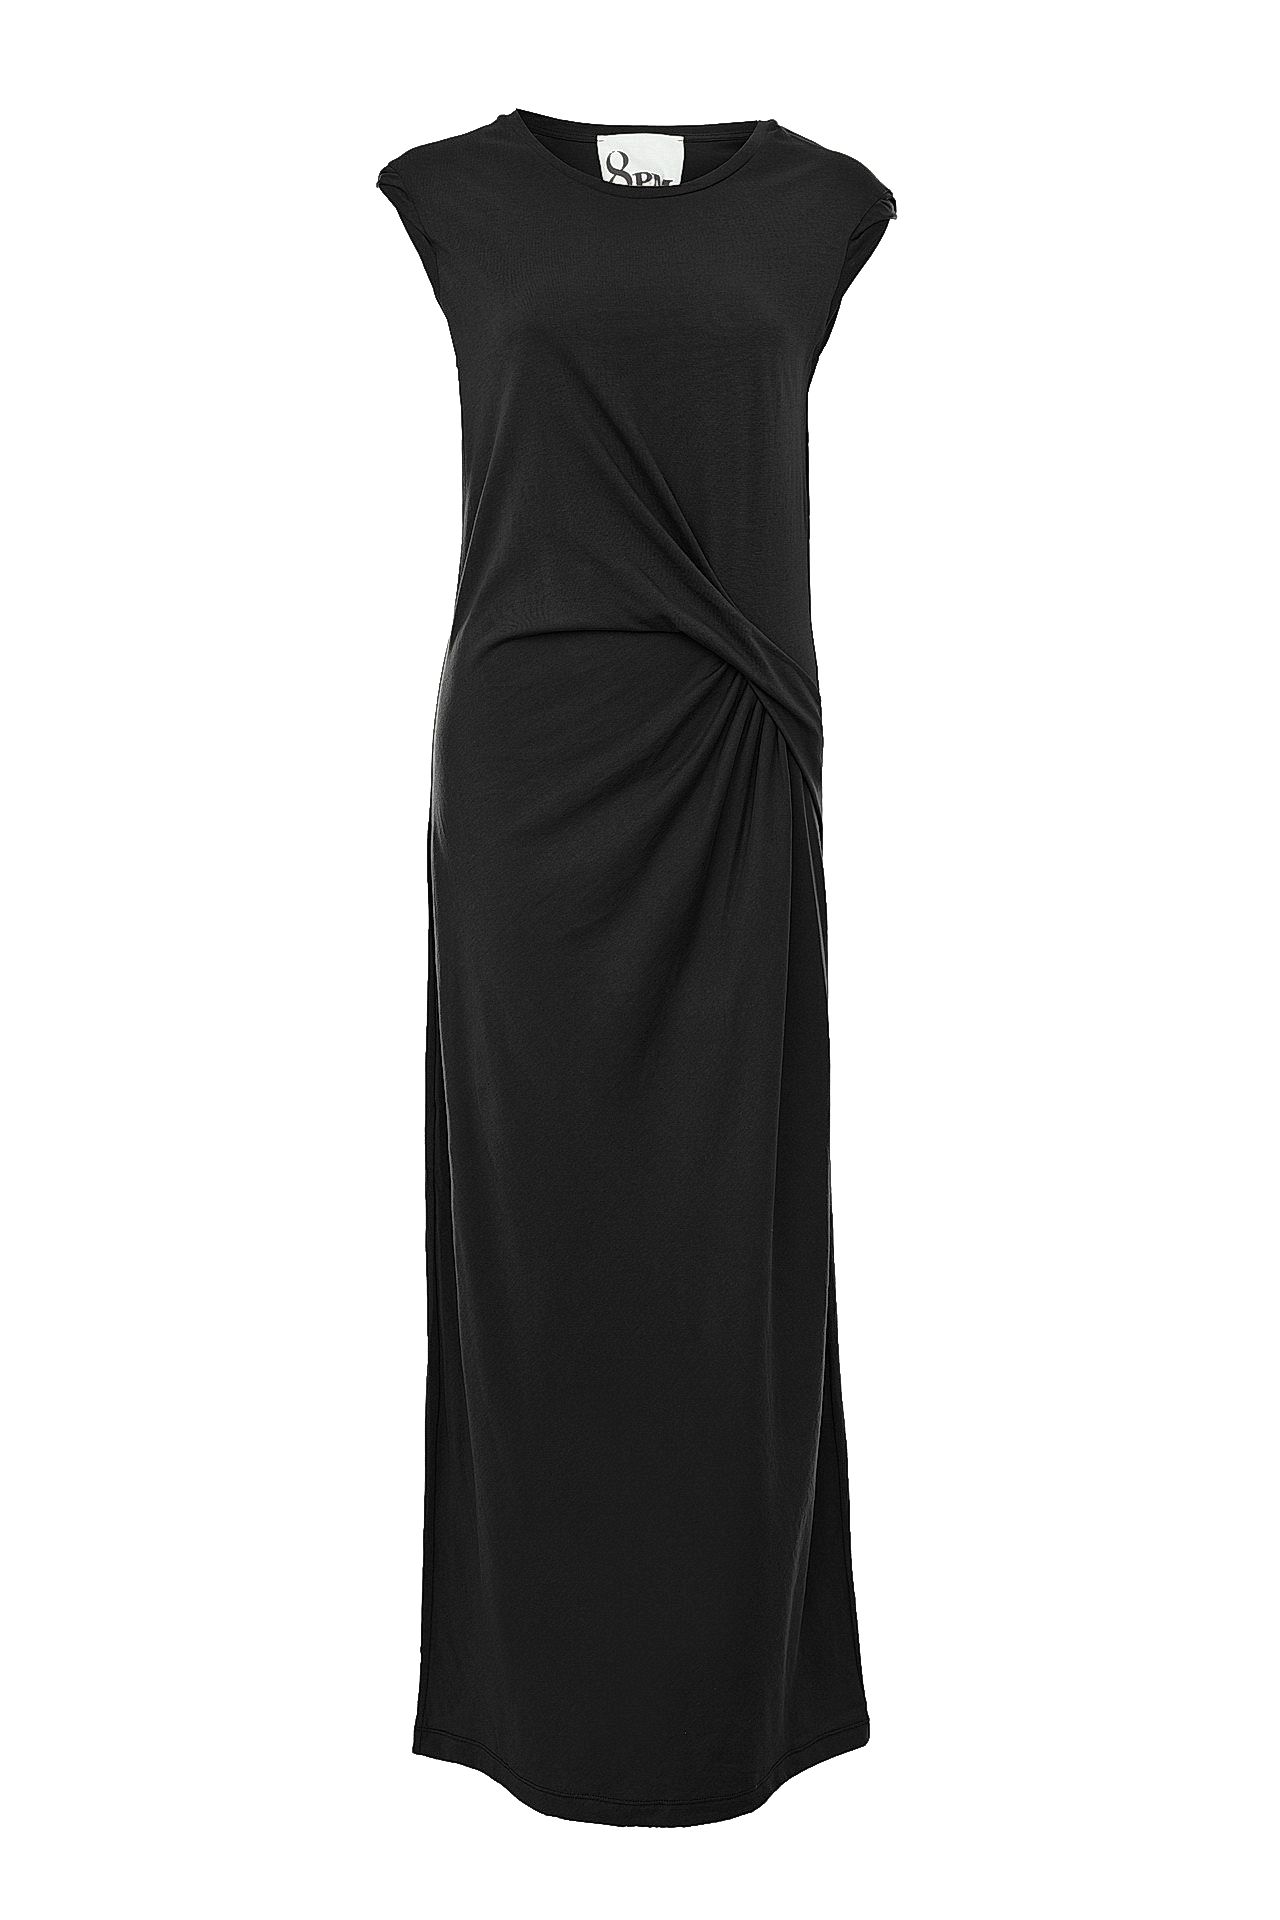 Одежда женская Платье 8PM (8PM71A19/17.2). Купить за 3750 руб.